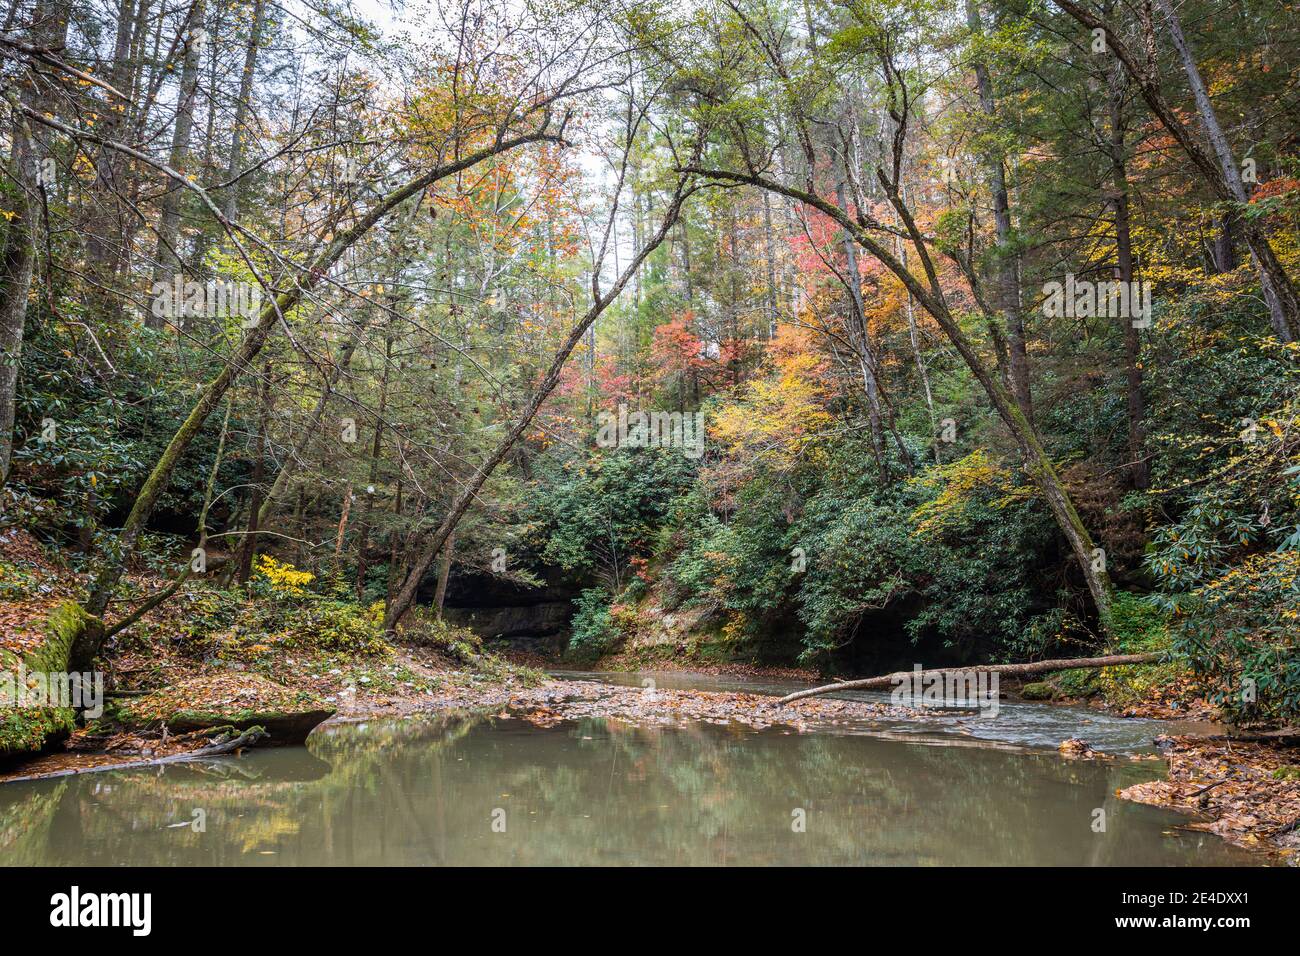 Una tranquila escena forestal en la garganta del Río Rojo del este de Kentucky. Foto de stock